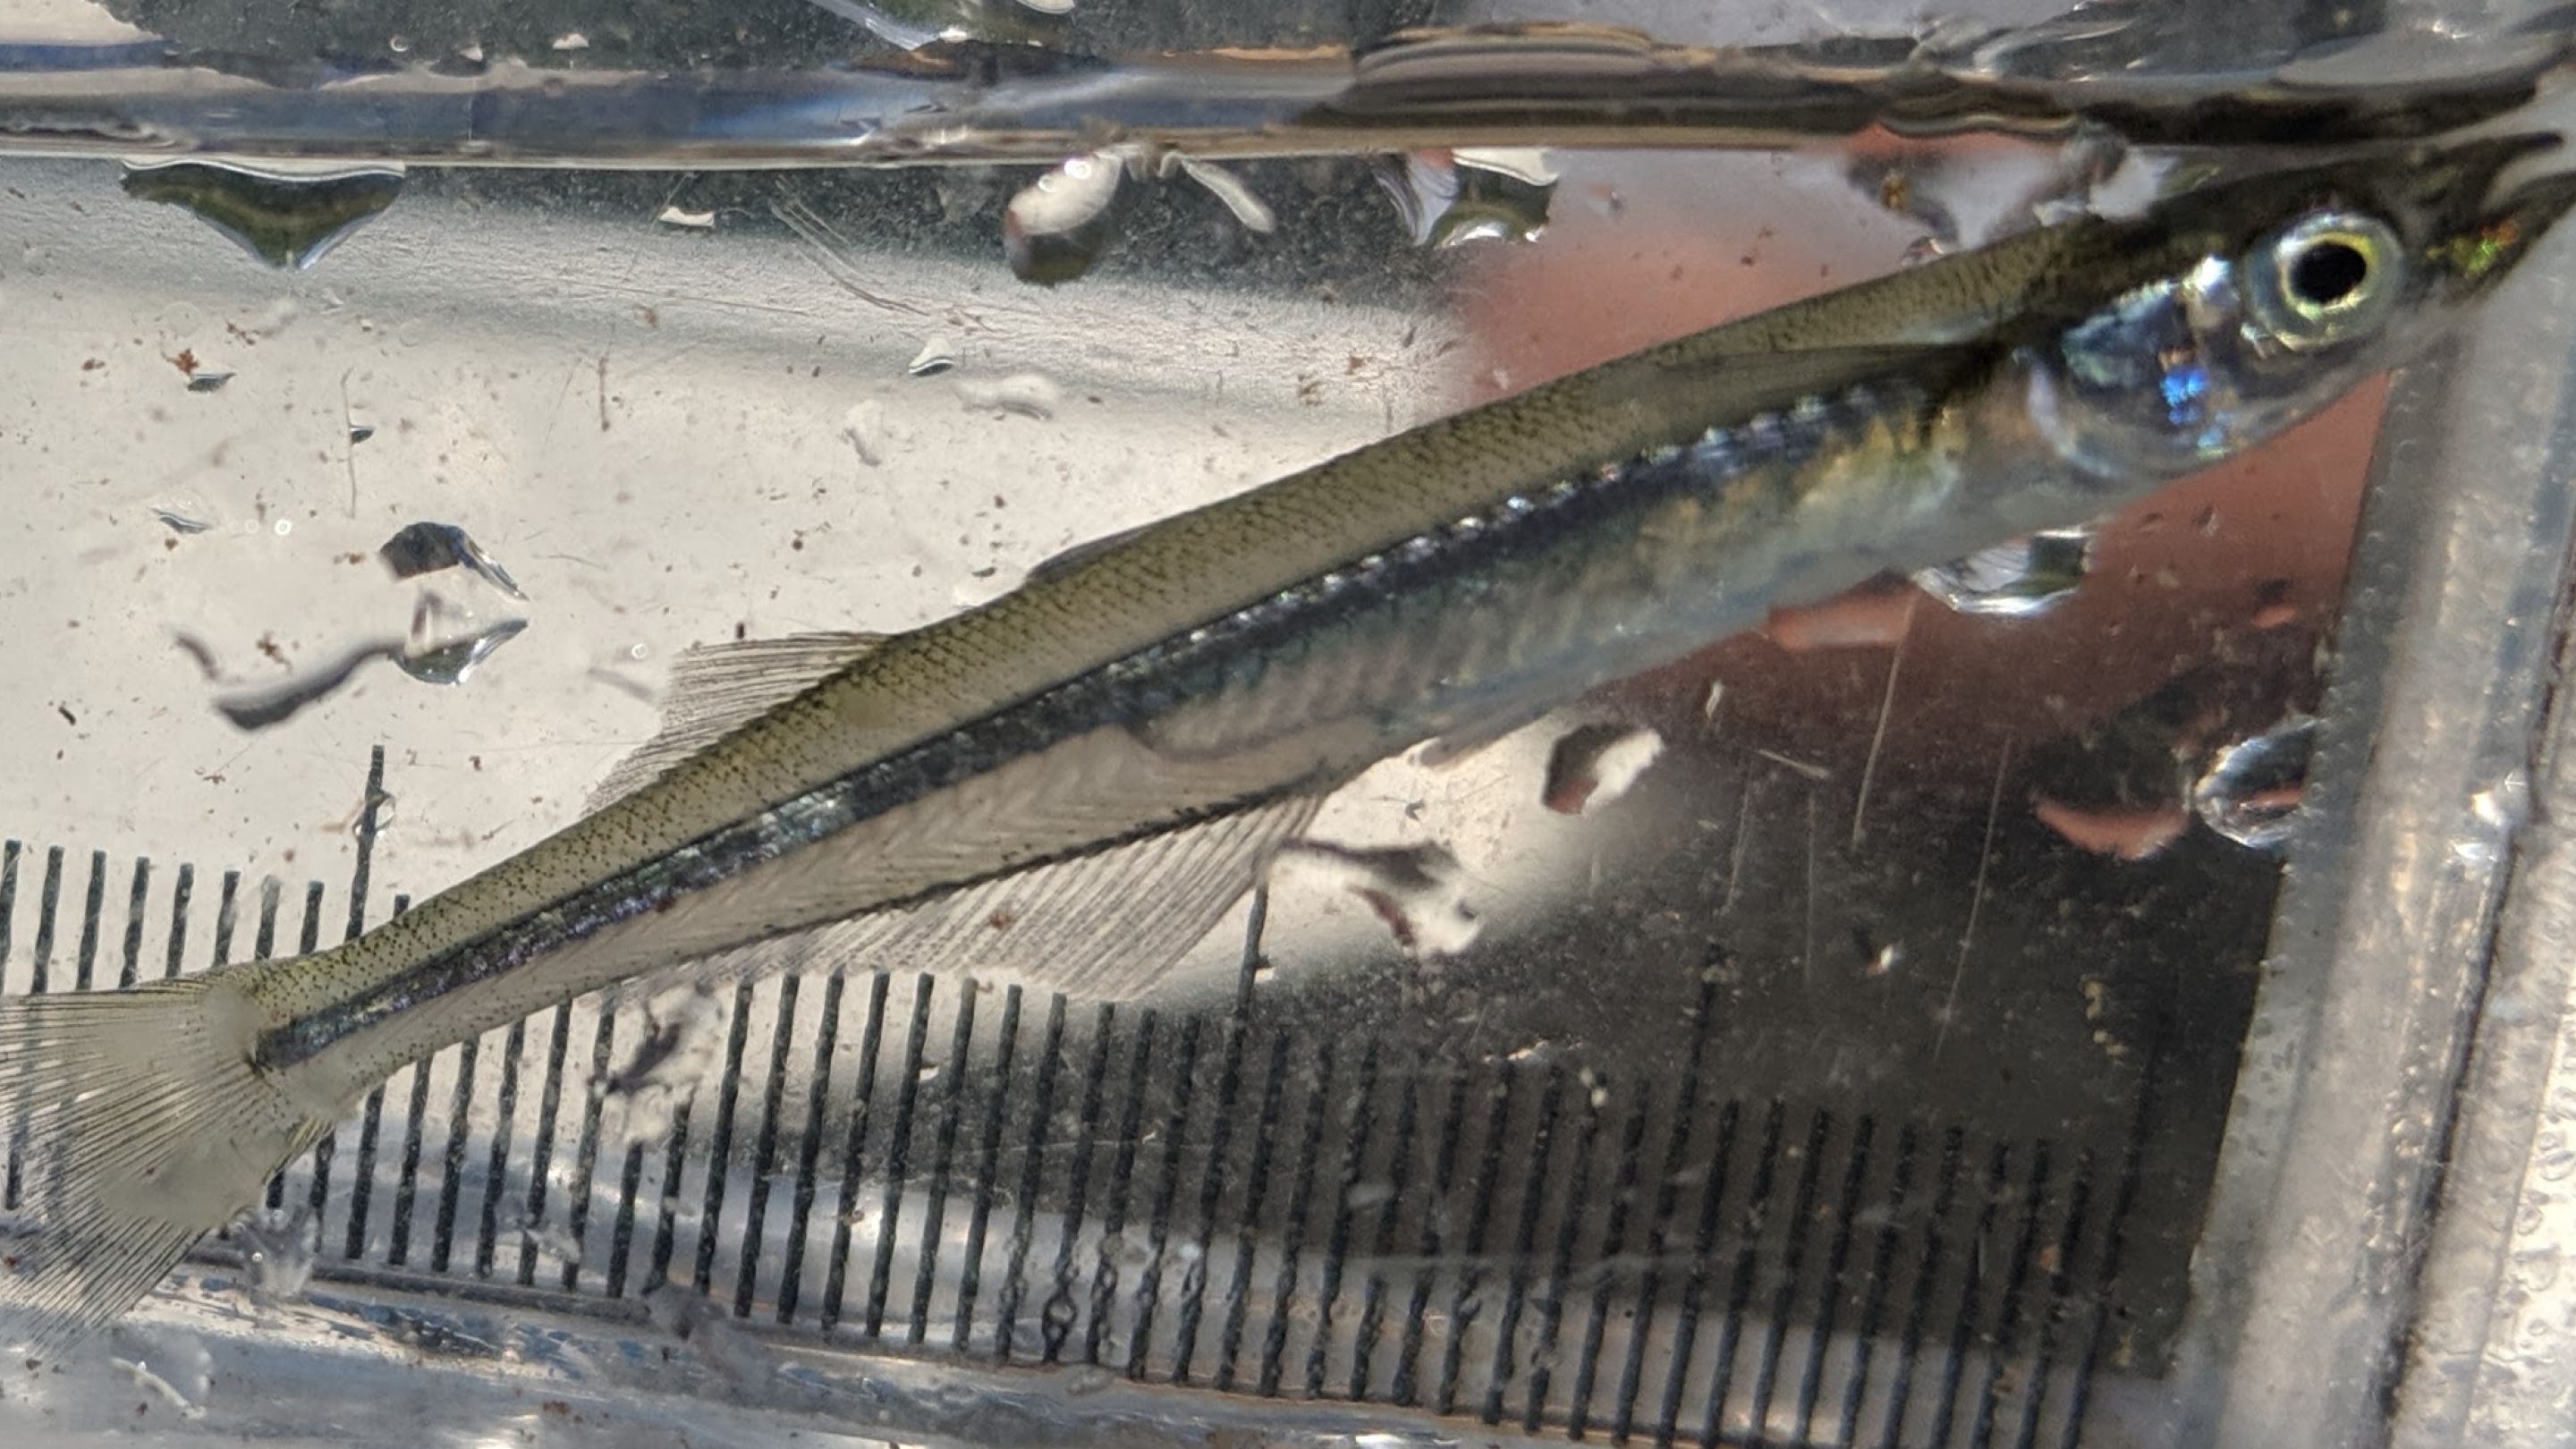 Image of a Brooke Silverside fish